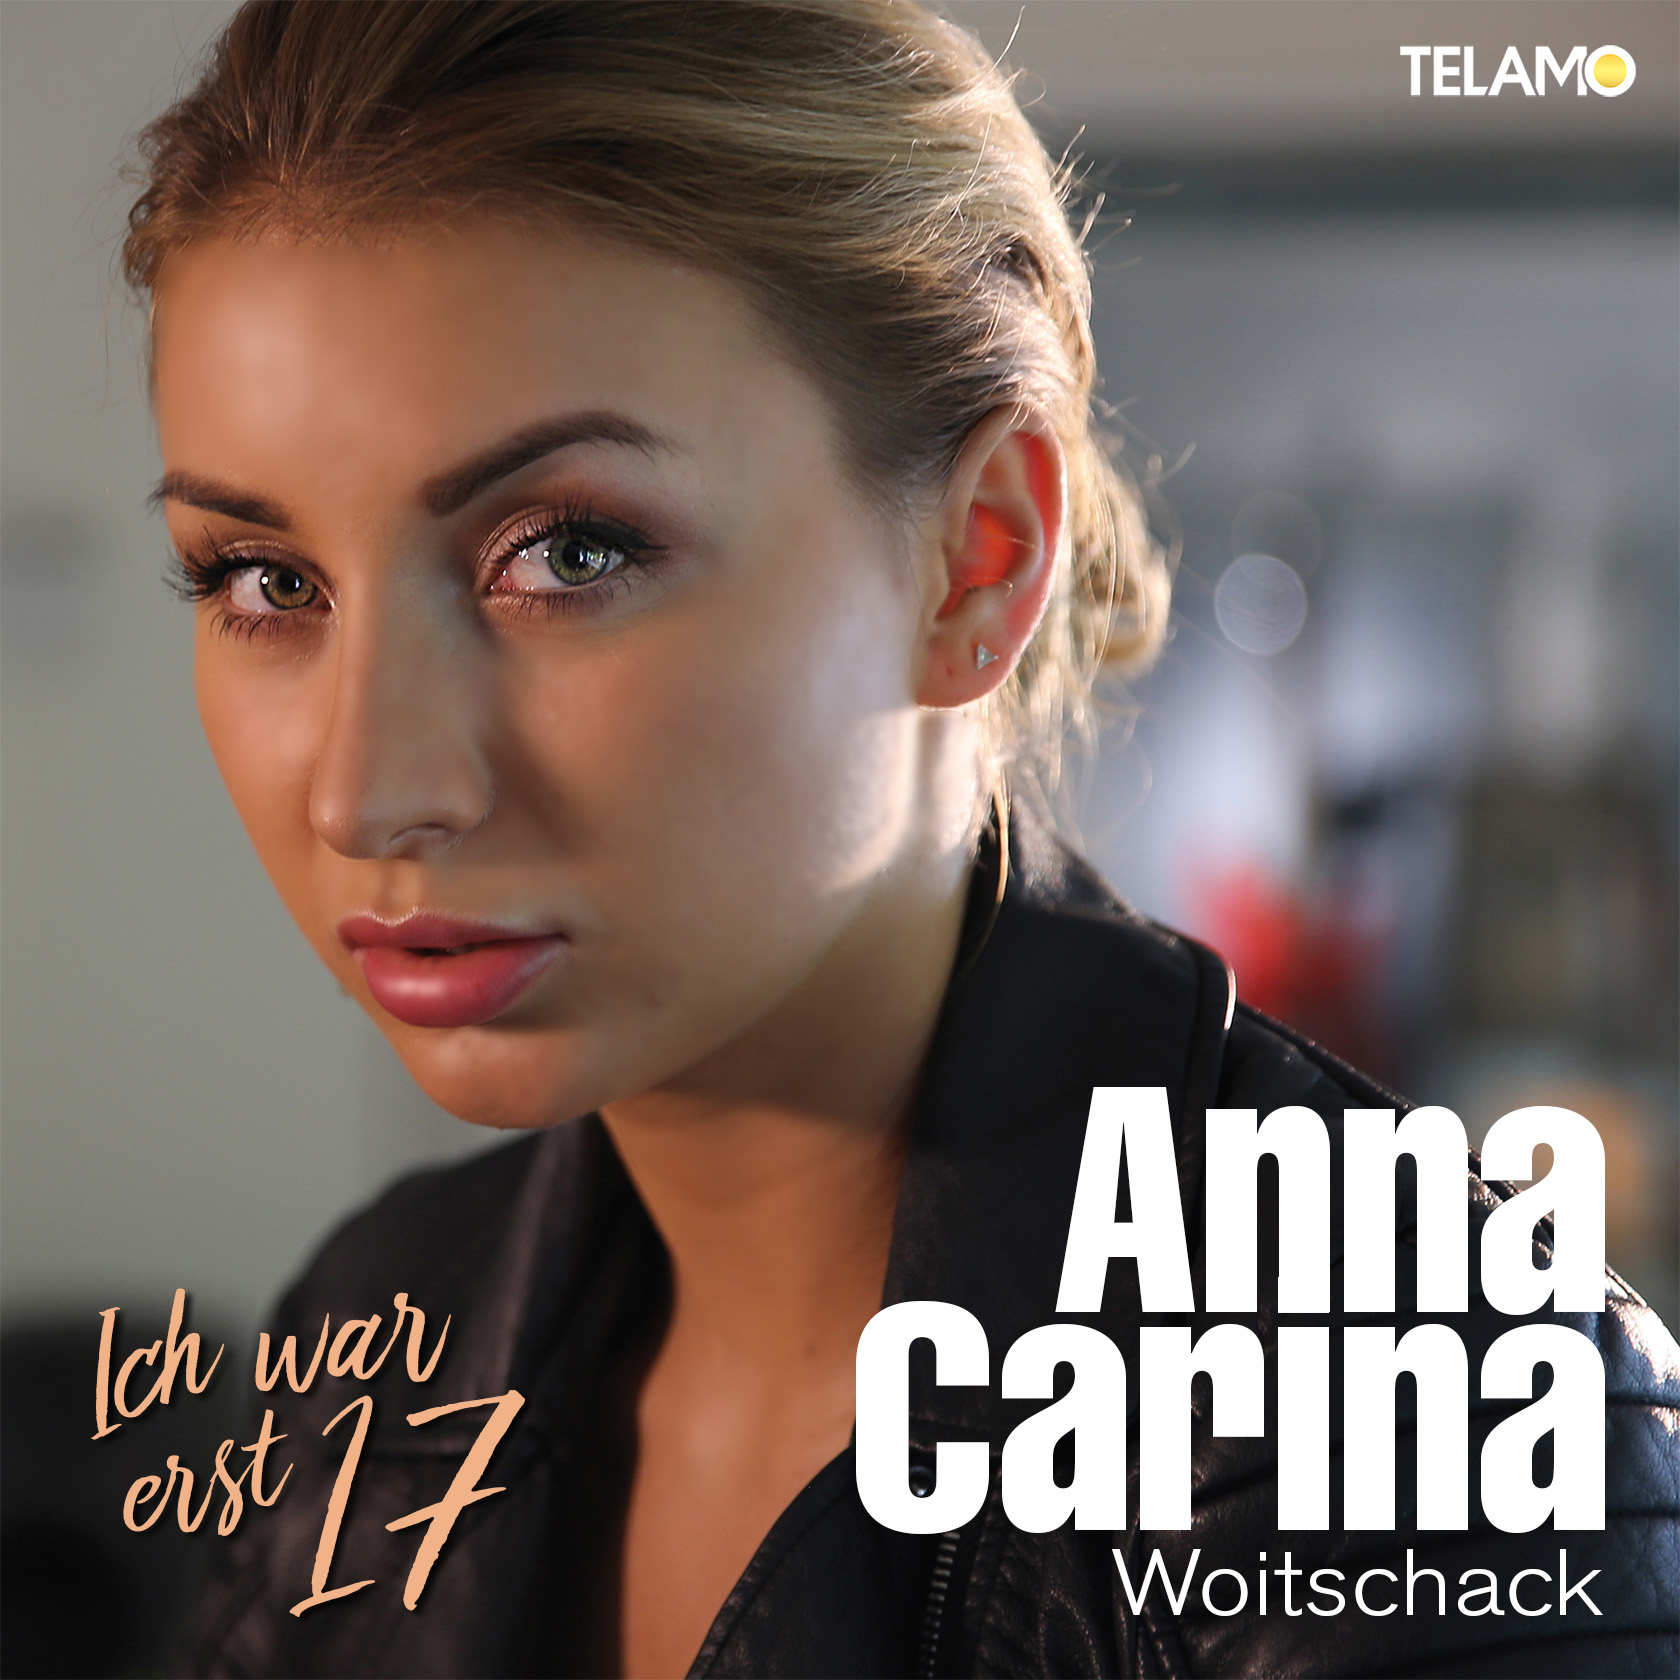 Anna Carina Woitschack veröffentlicht ihre Single "Ich war e